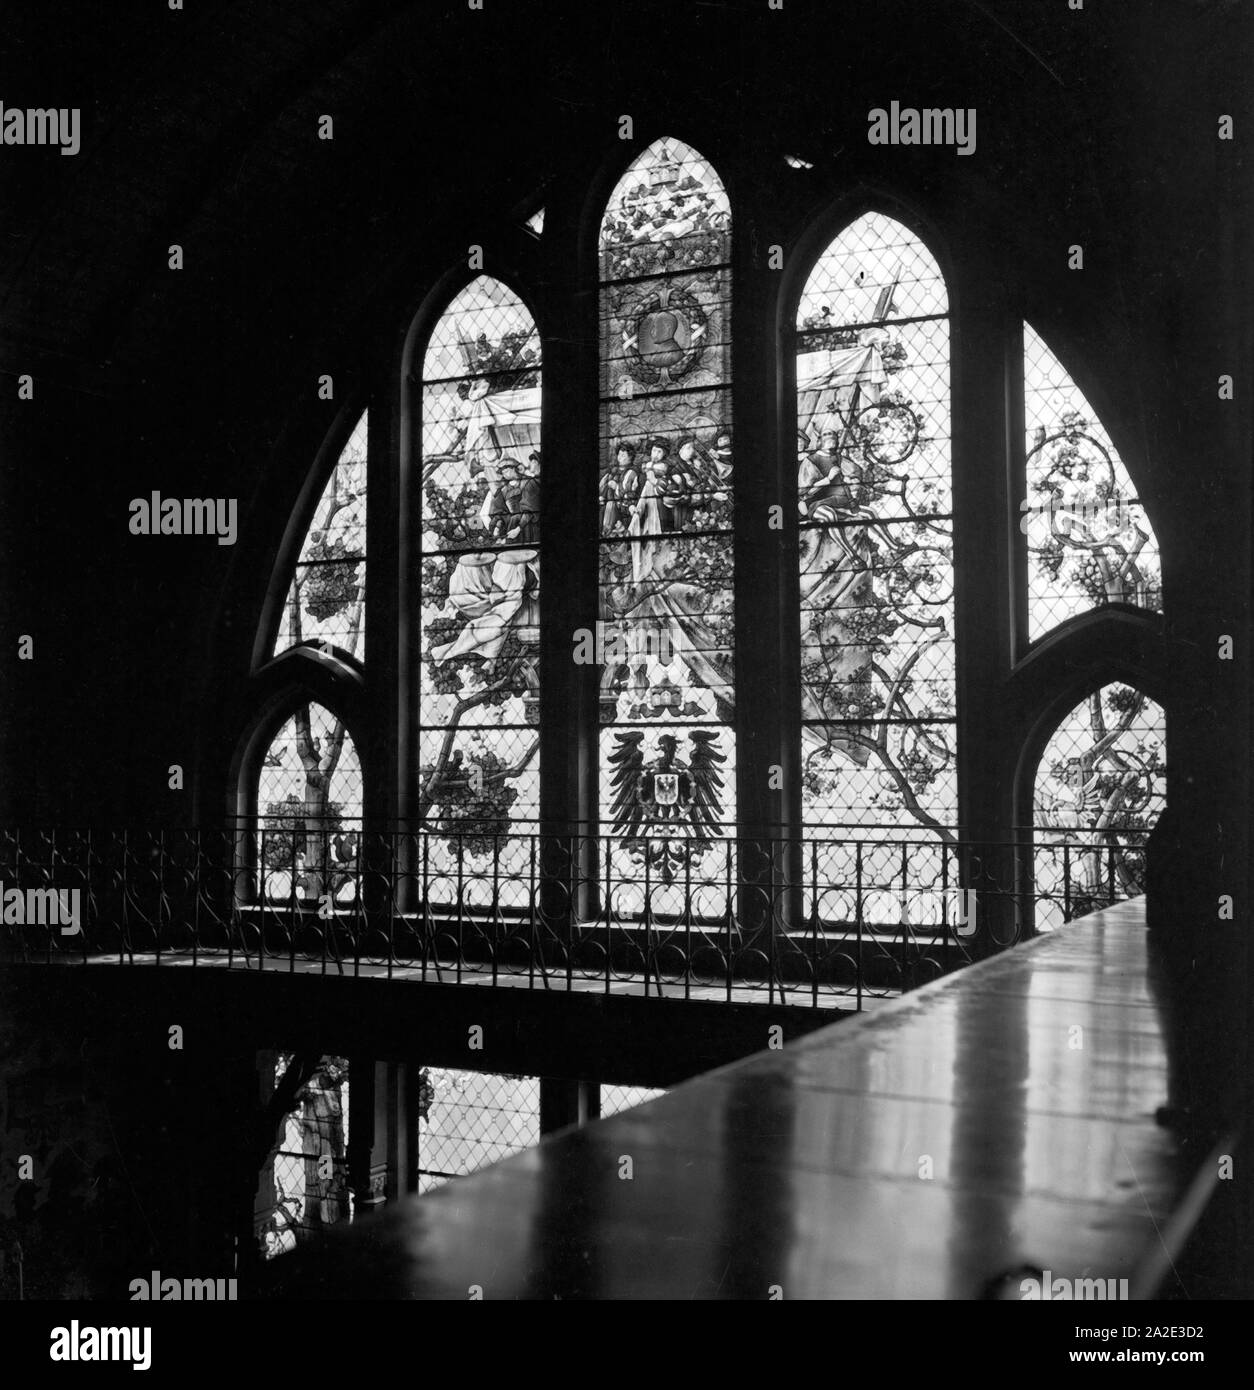 Fenster mit Wappen und Allegorien im Rathaus von Hildesheim, Deutschland 1930er Jahre. Window with coat of arms and allegories at the city hall of Hildesheim, Germany 1930s. Stock Photo